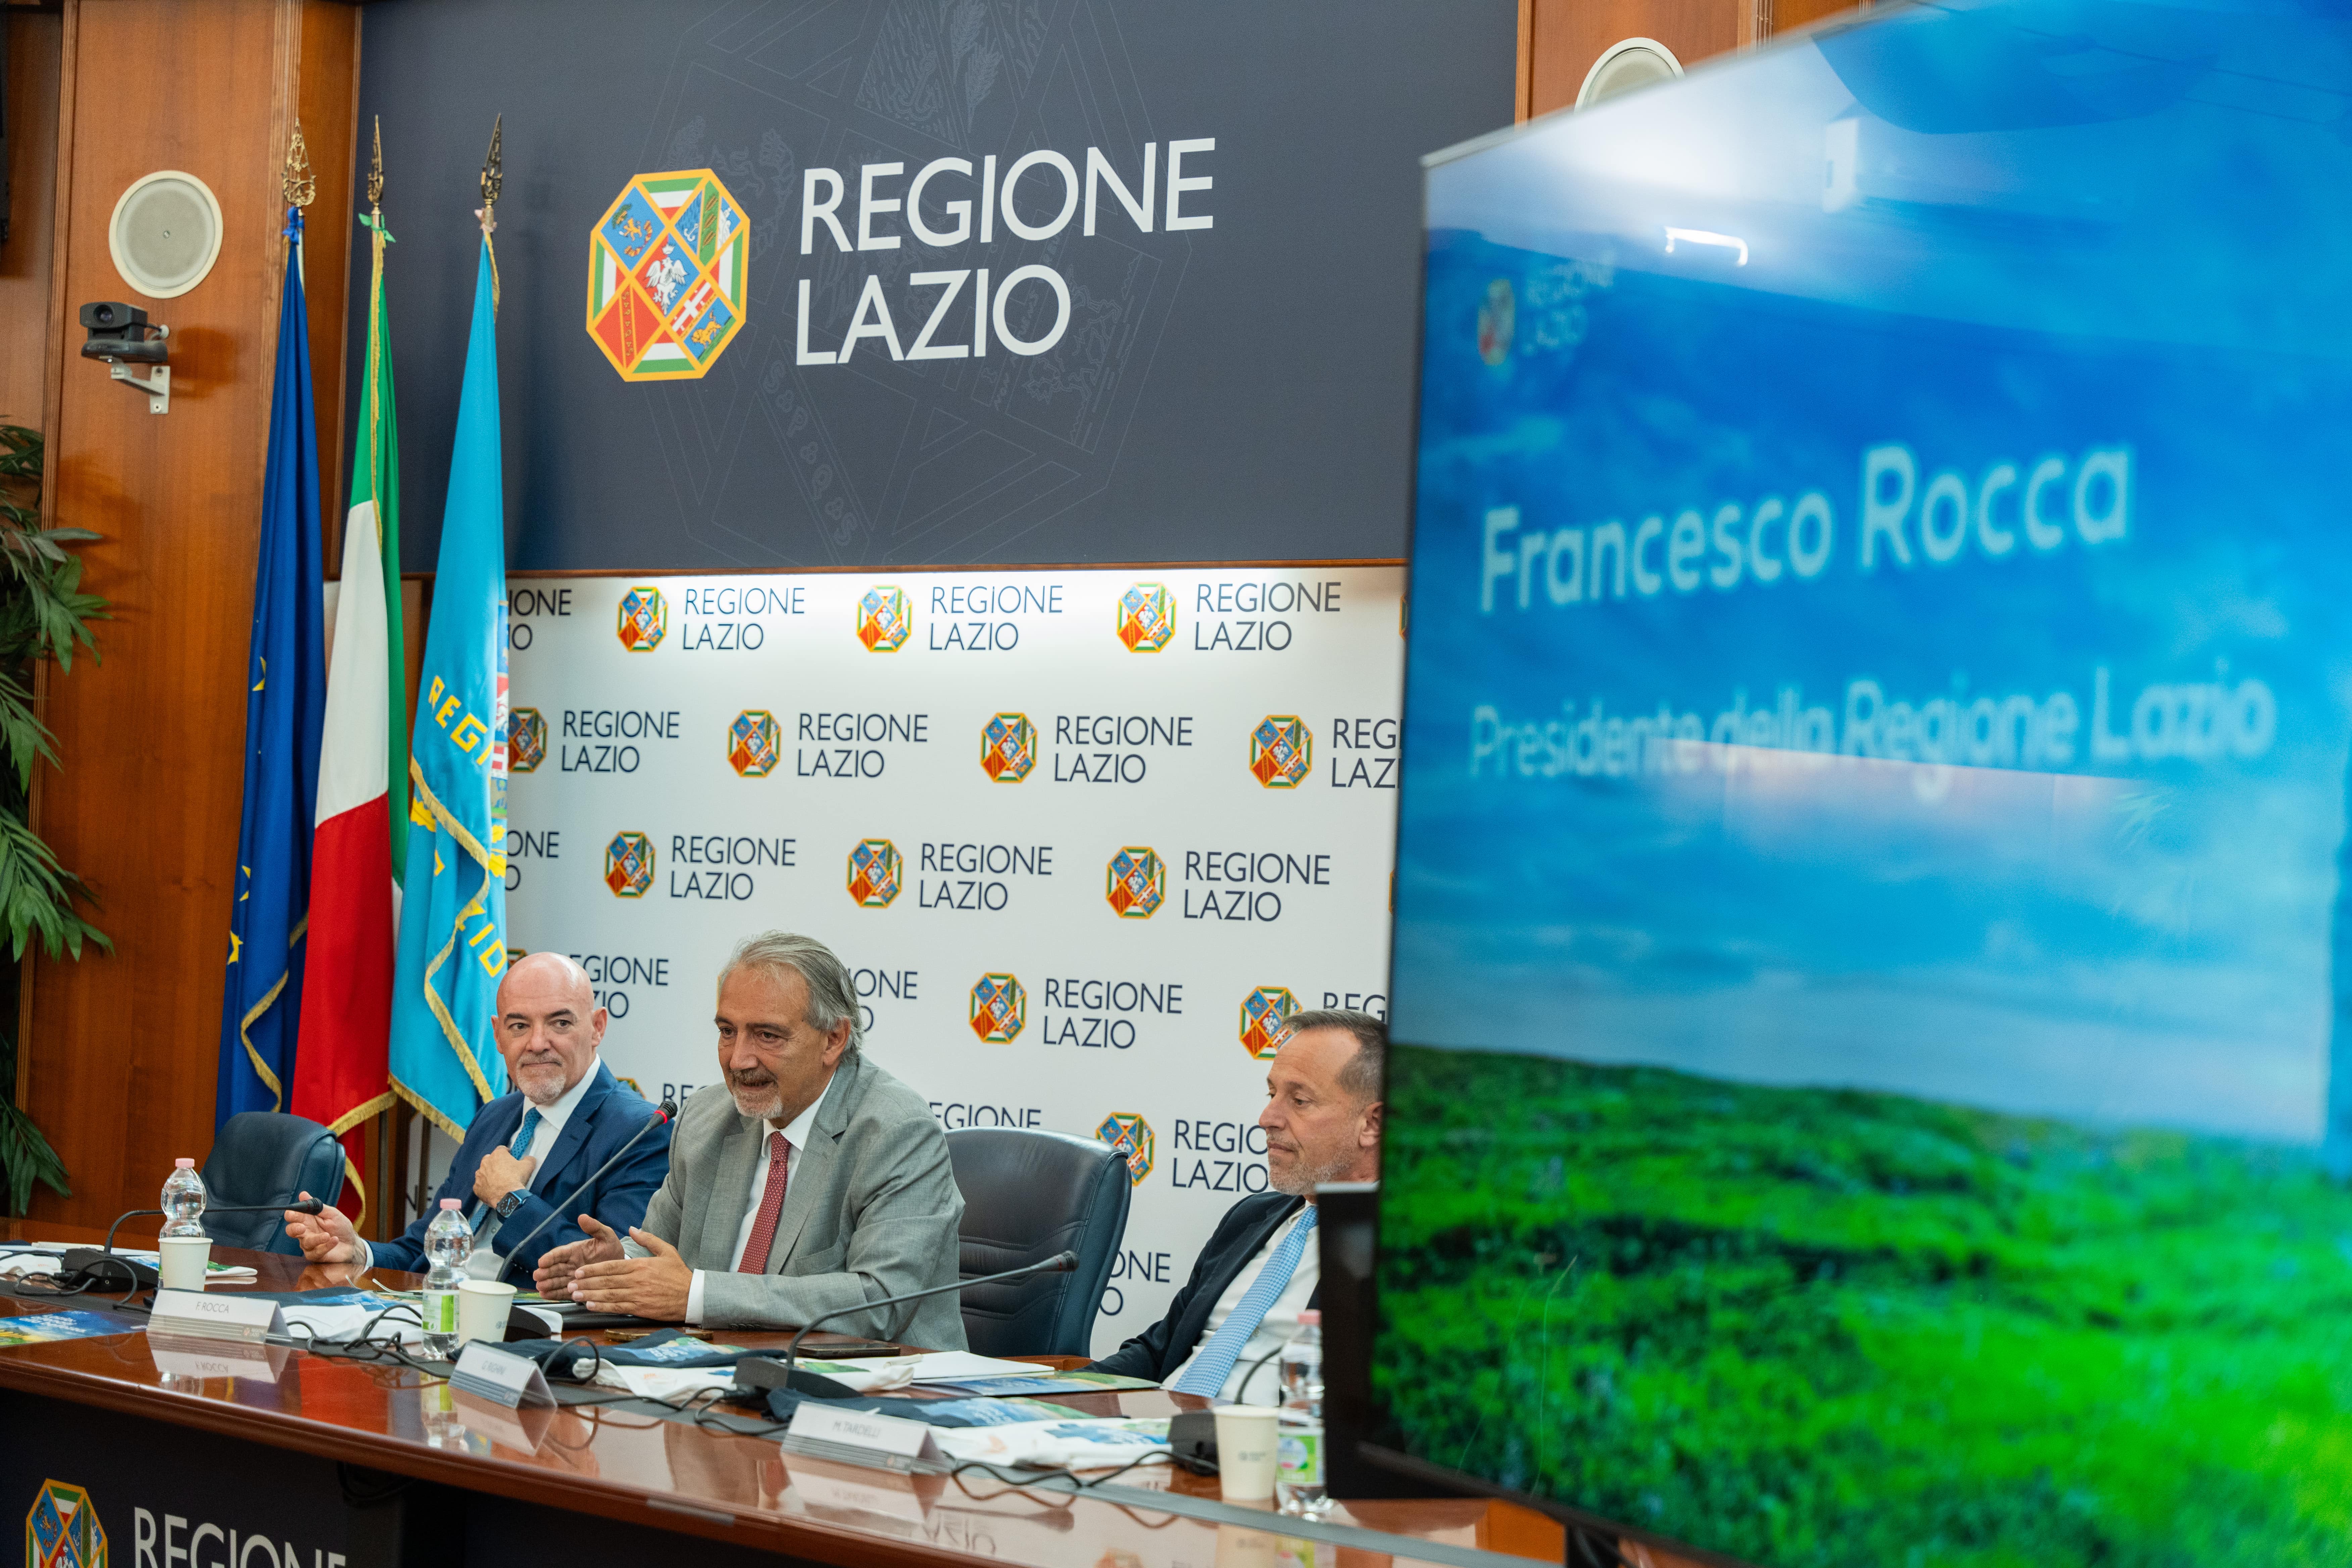 Lazio Region Council